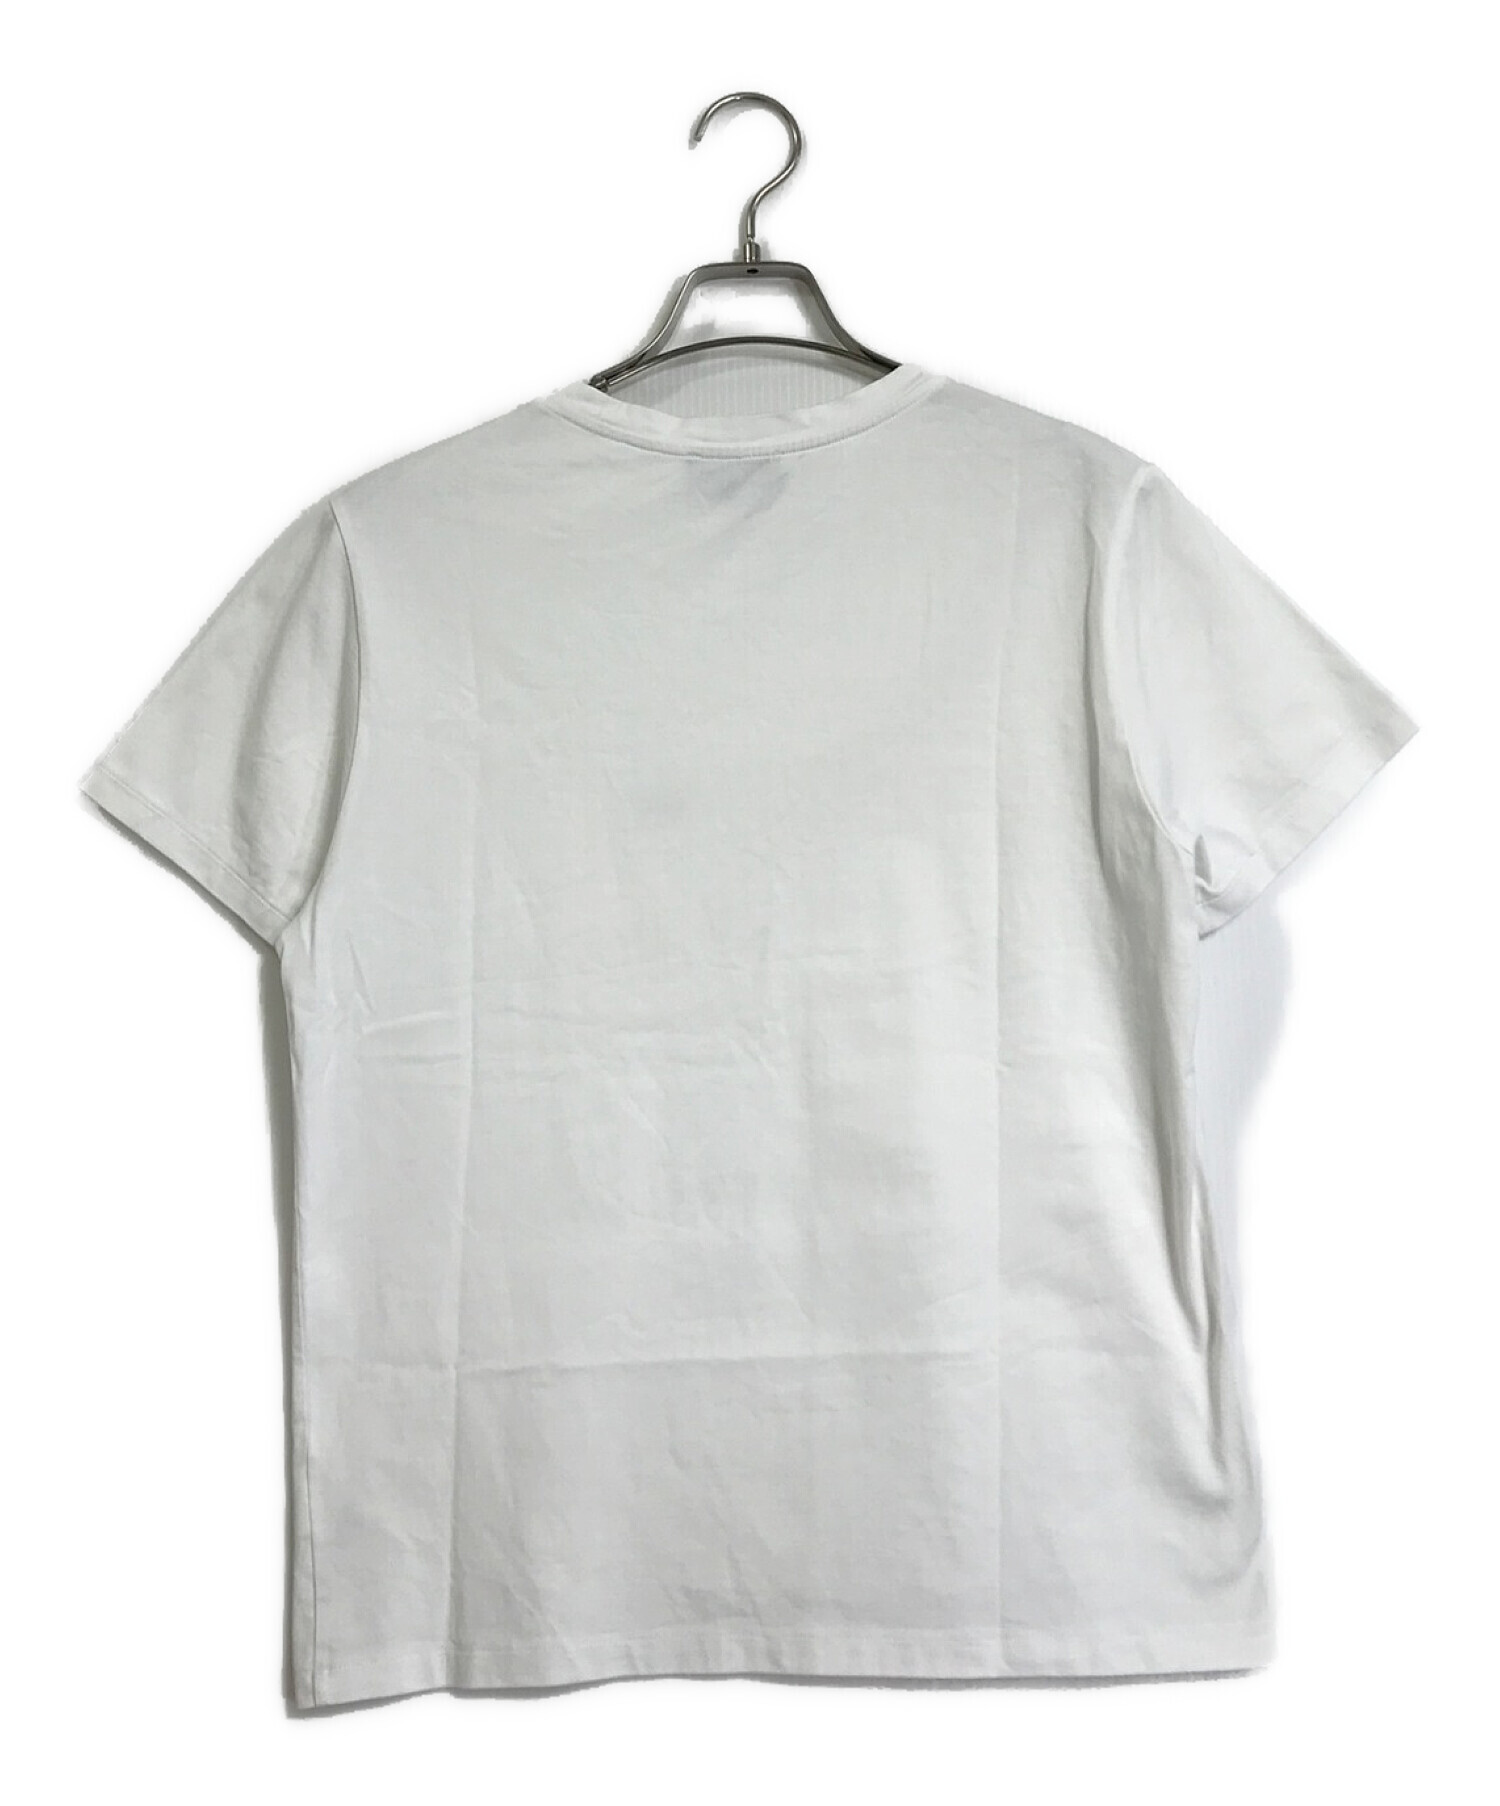 A.P.C. (アー・ペー・セー) 刺繍入りポケットTシャツ ホワイト サイズ:XS